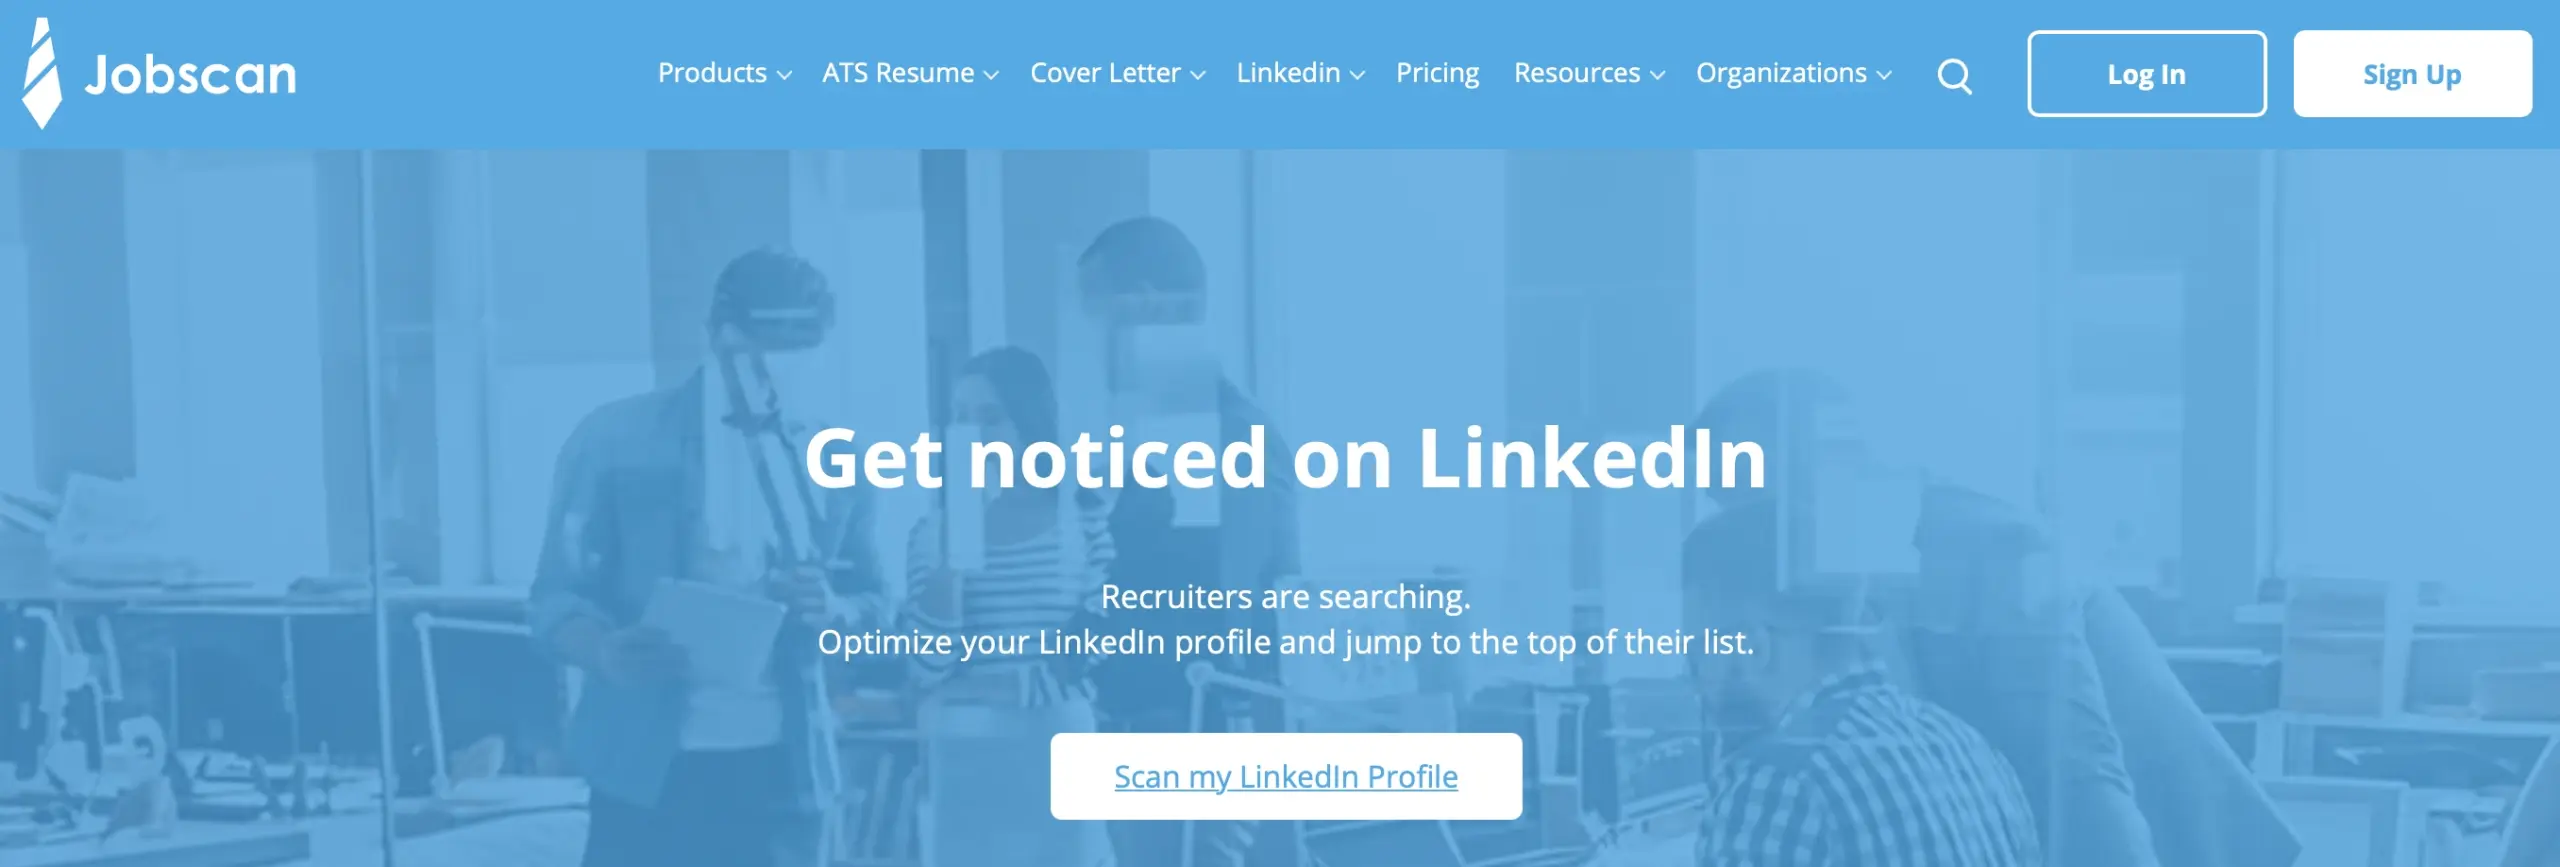 Jobscan LinkedIn Tool - homepage